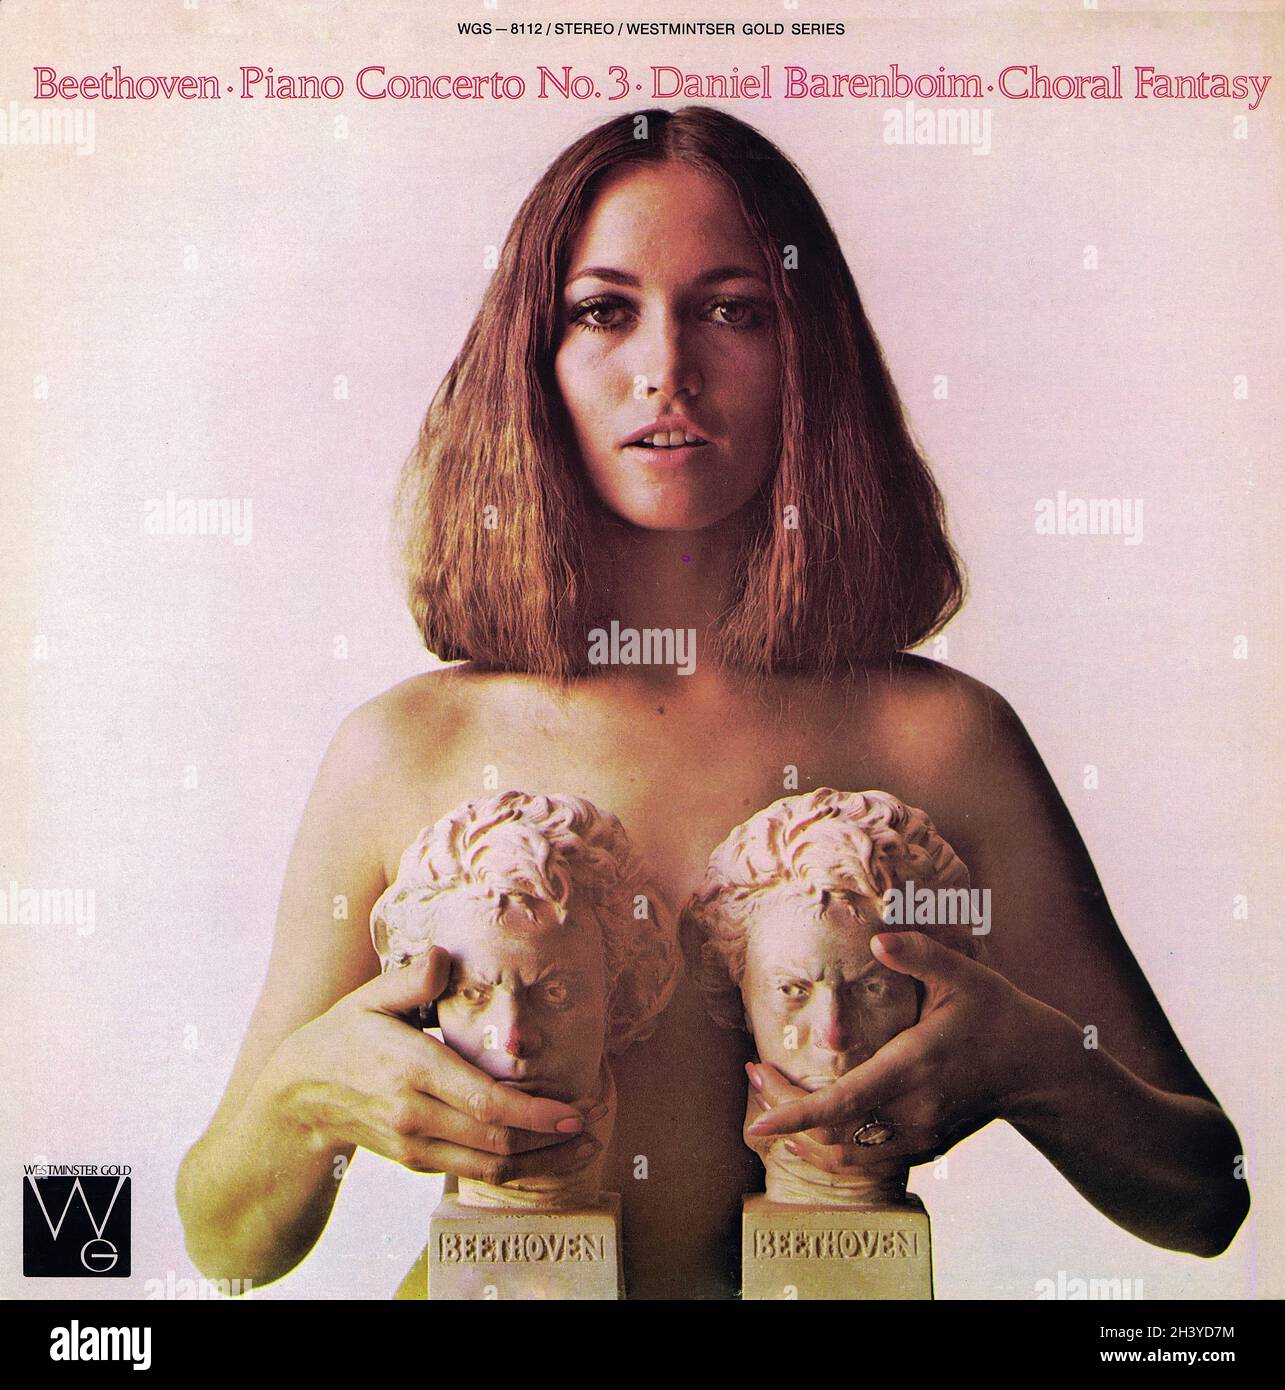 Beethoven Concerto 3 Choral Fantasy - Barenboim Westminster Gold 